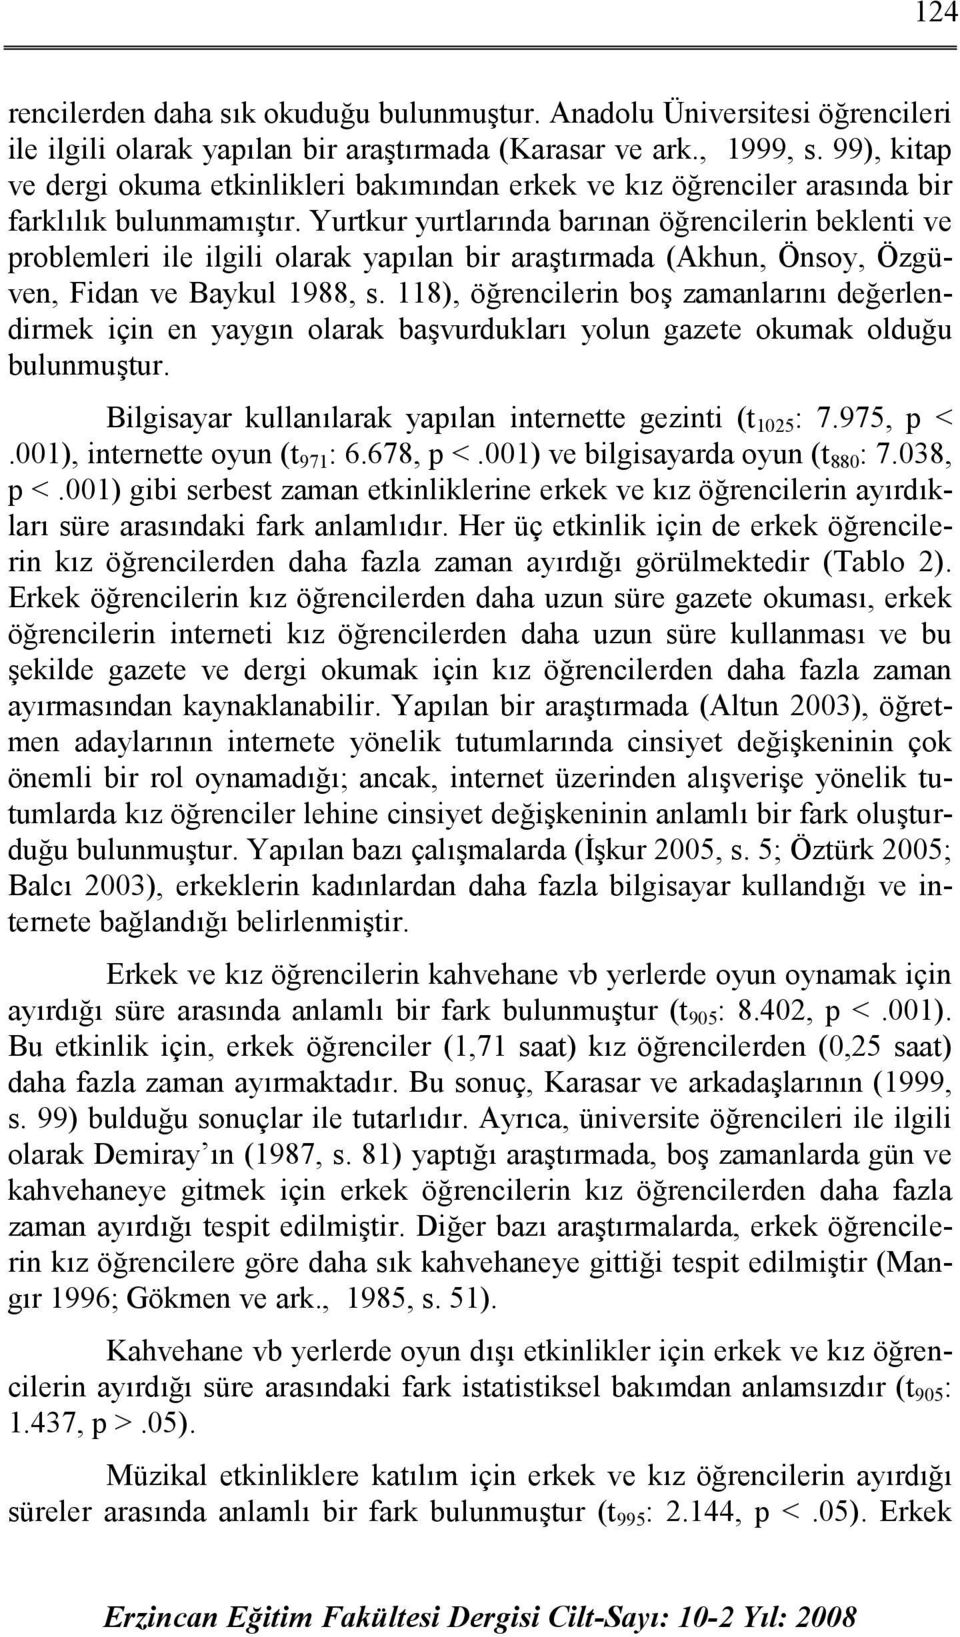 Yurtkur yurtlarında barınan öğrencilerin beklenti ve problemleri ile ilgili olarak yapılan bir araştırmada (Akhun, Önsoy, Özgüven, Fidan ve Baykul 1988, s.